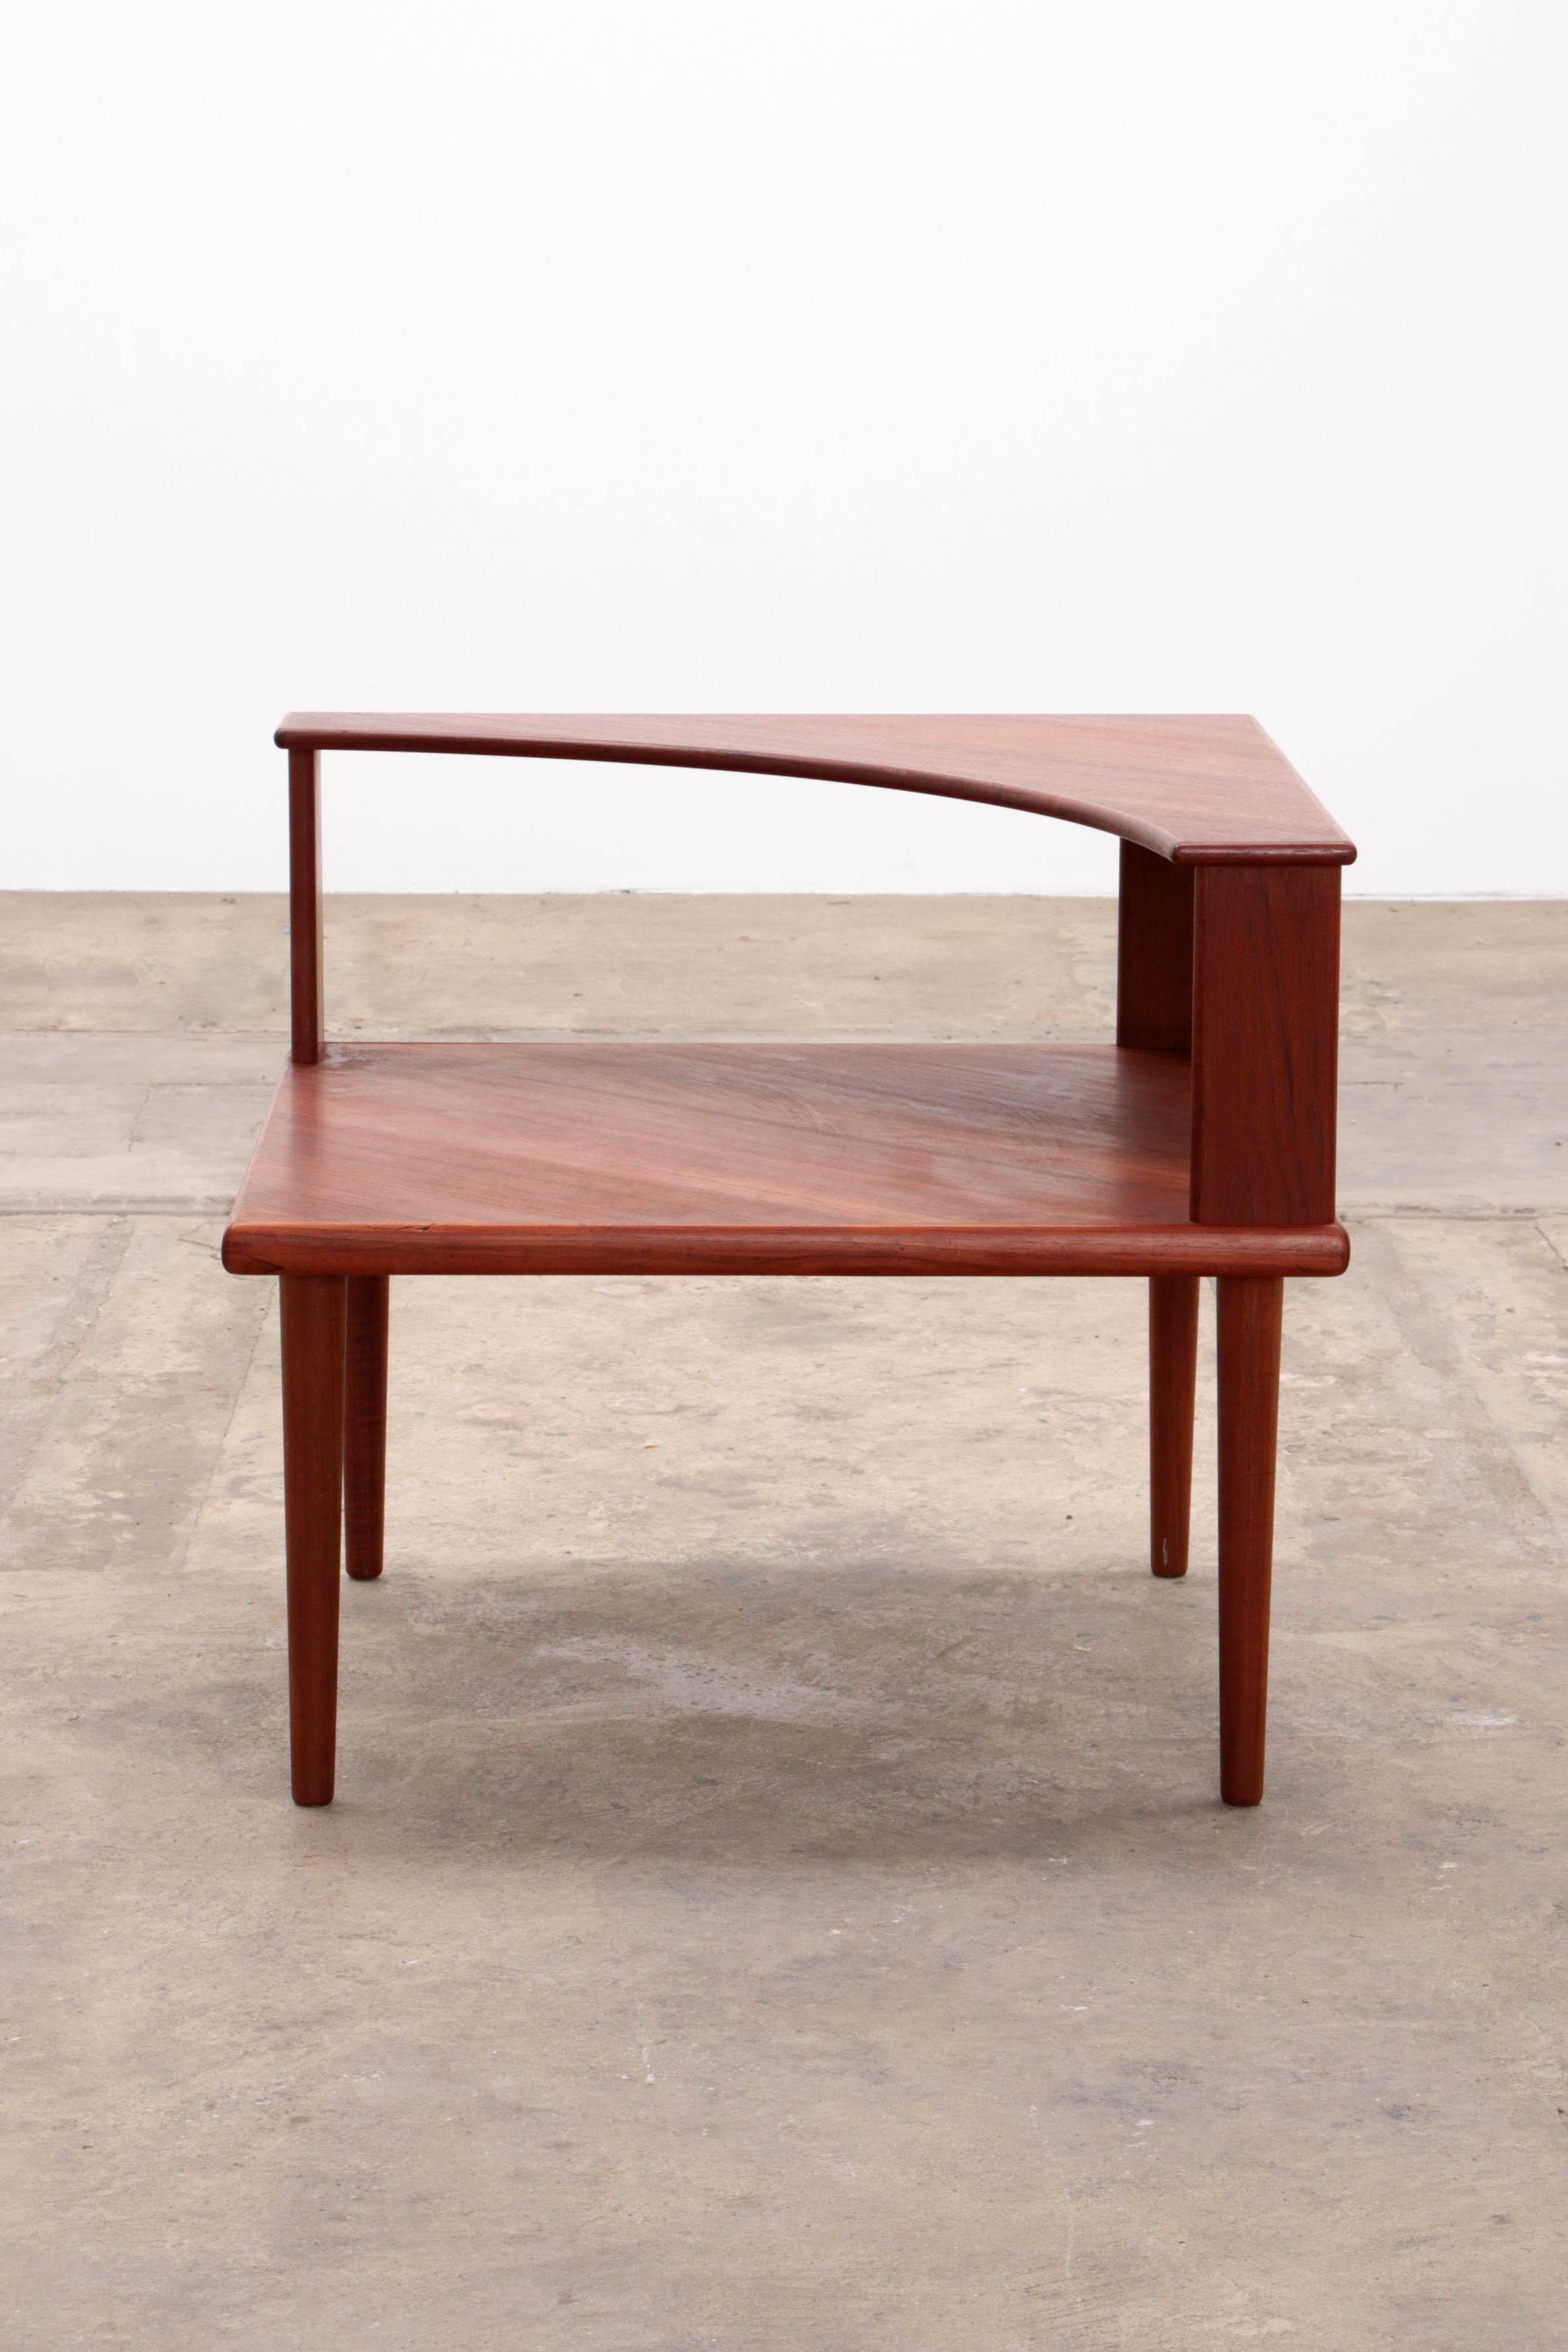 Découvrez l'élégance du design scandinave avec notre table d'angle suédoise. Un meuble intemporel qui s'impose dans toutes les pièces. Fabriquée en bois de teck de haute qualité, cette table offre non seulement une grande durabilité, mais aussi un